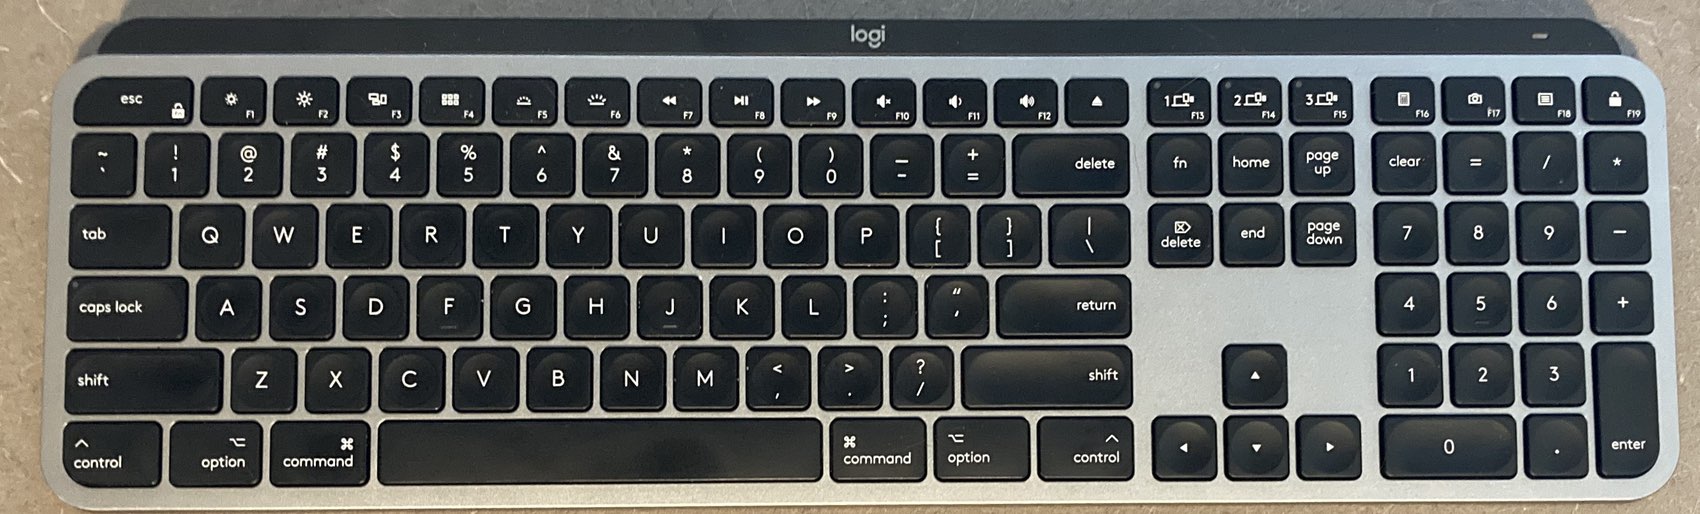 logitech keyboard on mac control key